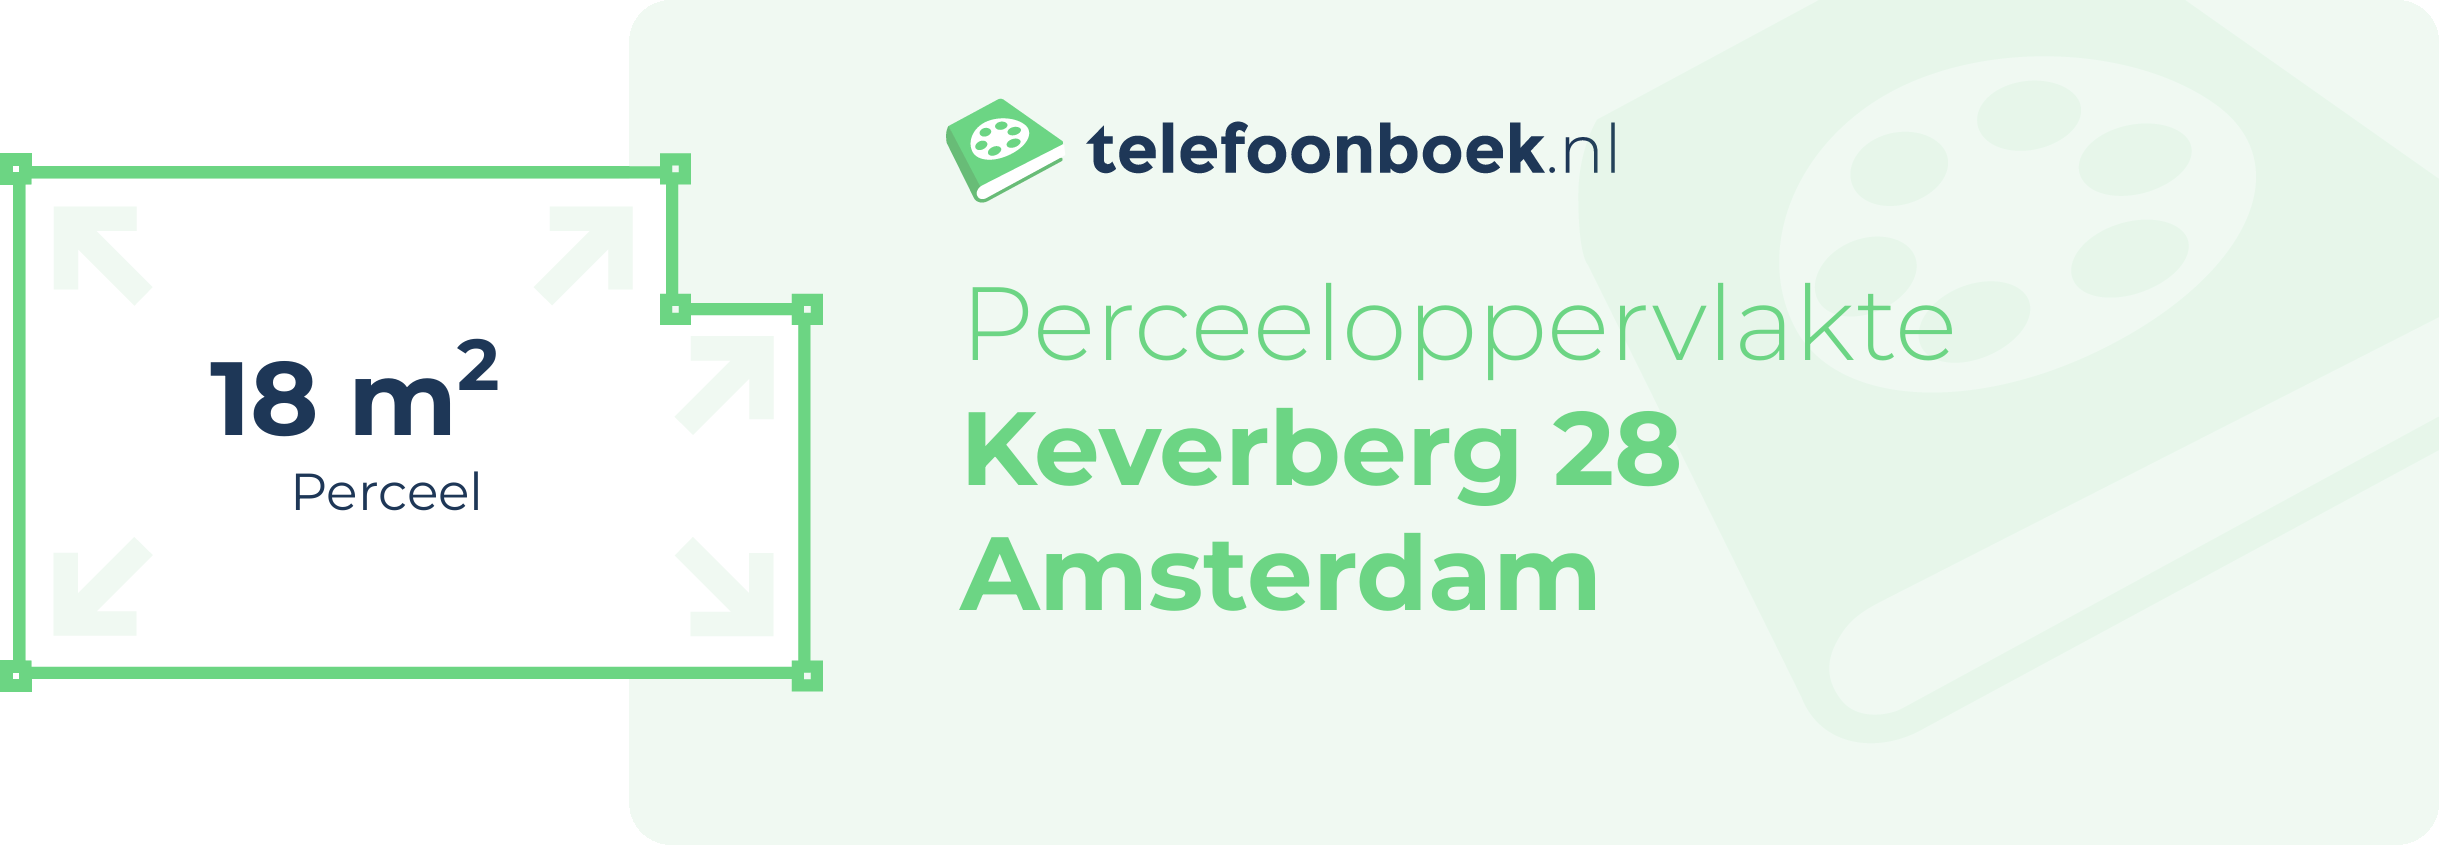 Perceeloppervlakte Keverberg 28 Amsterdam